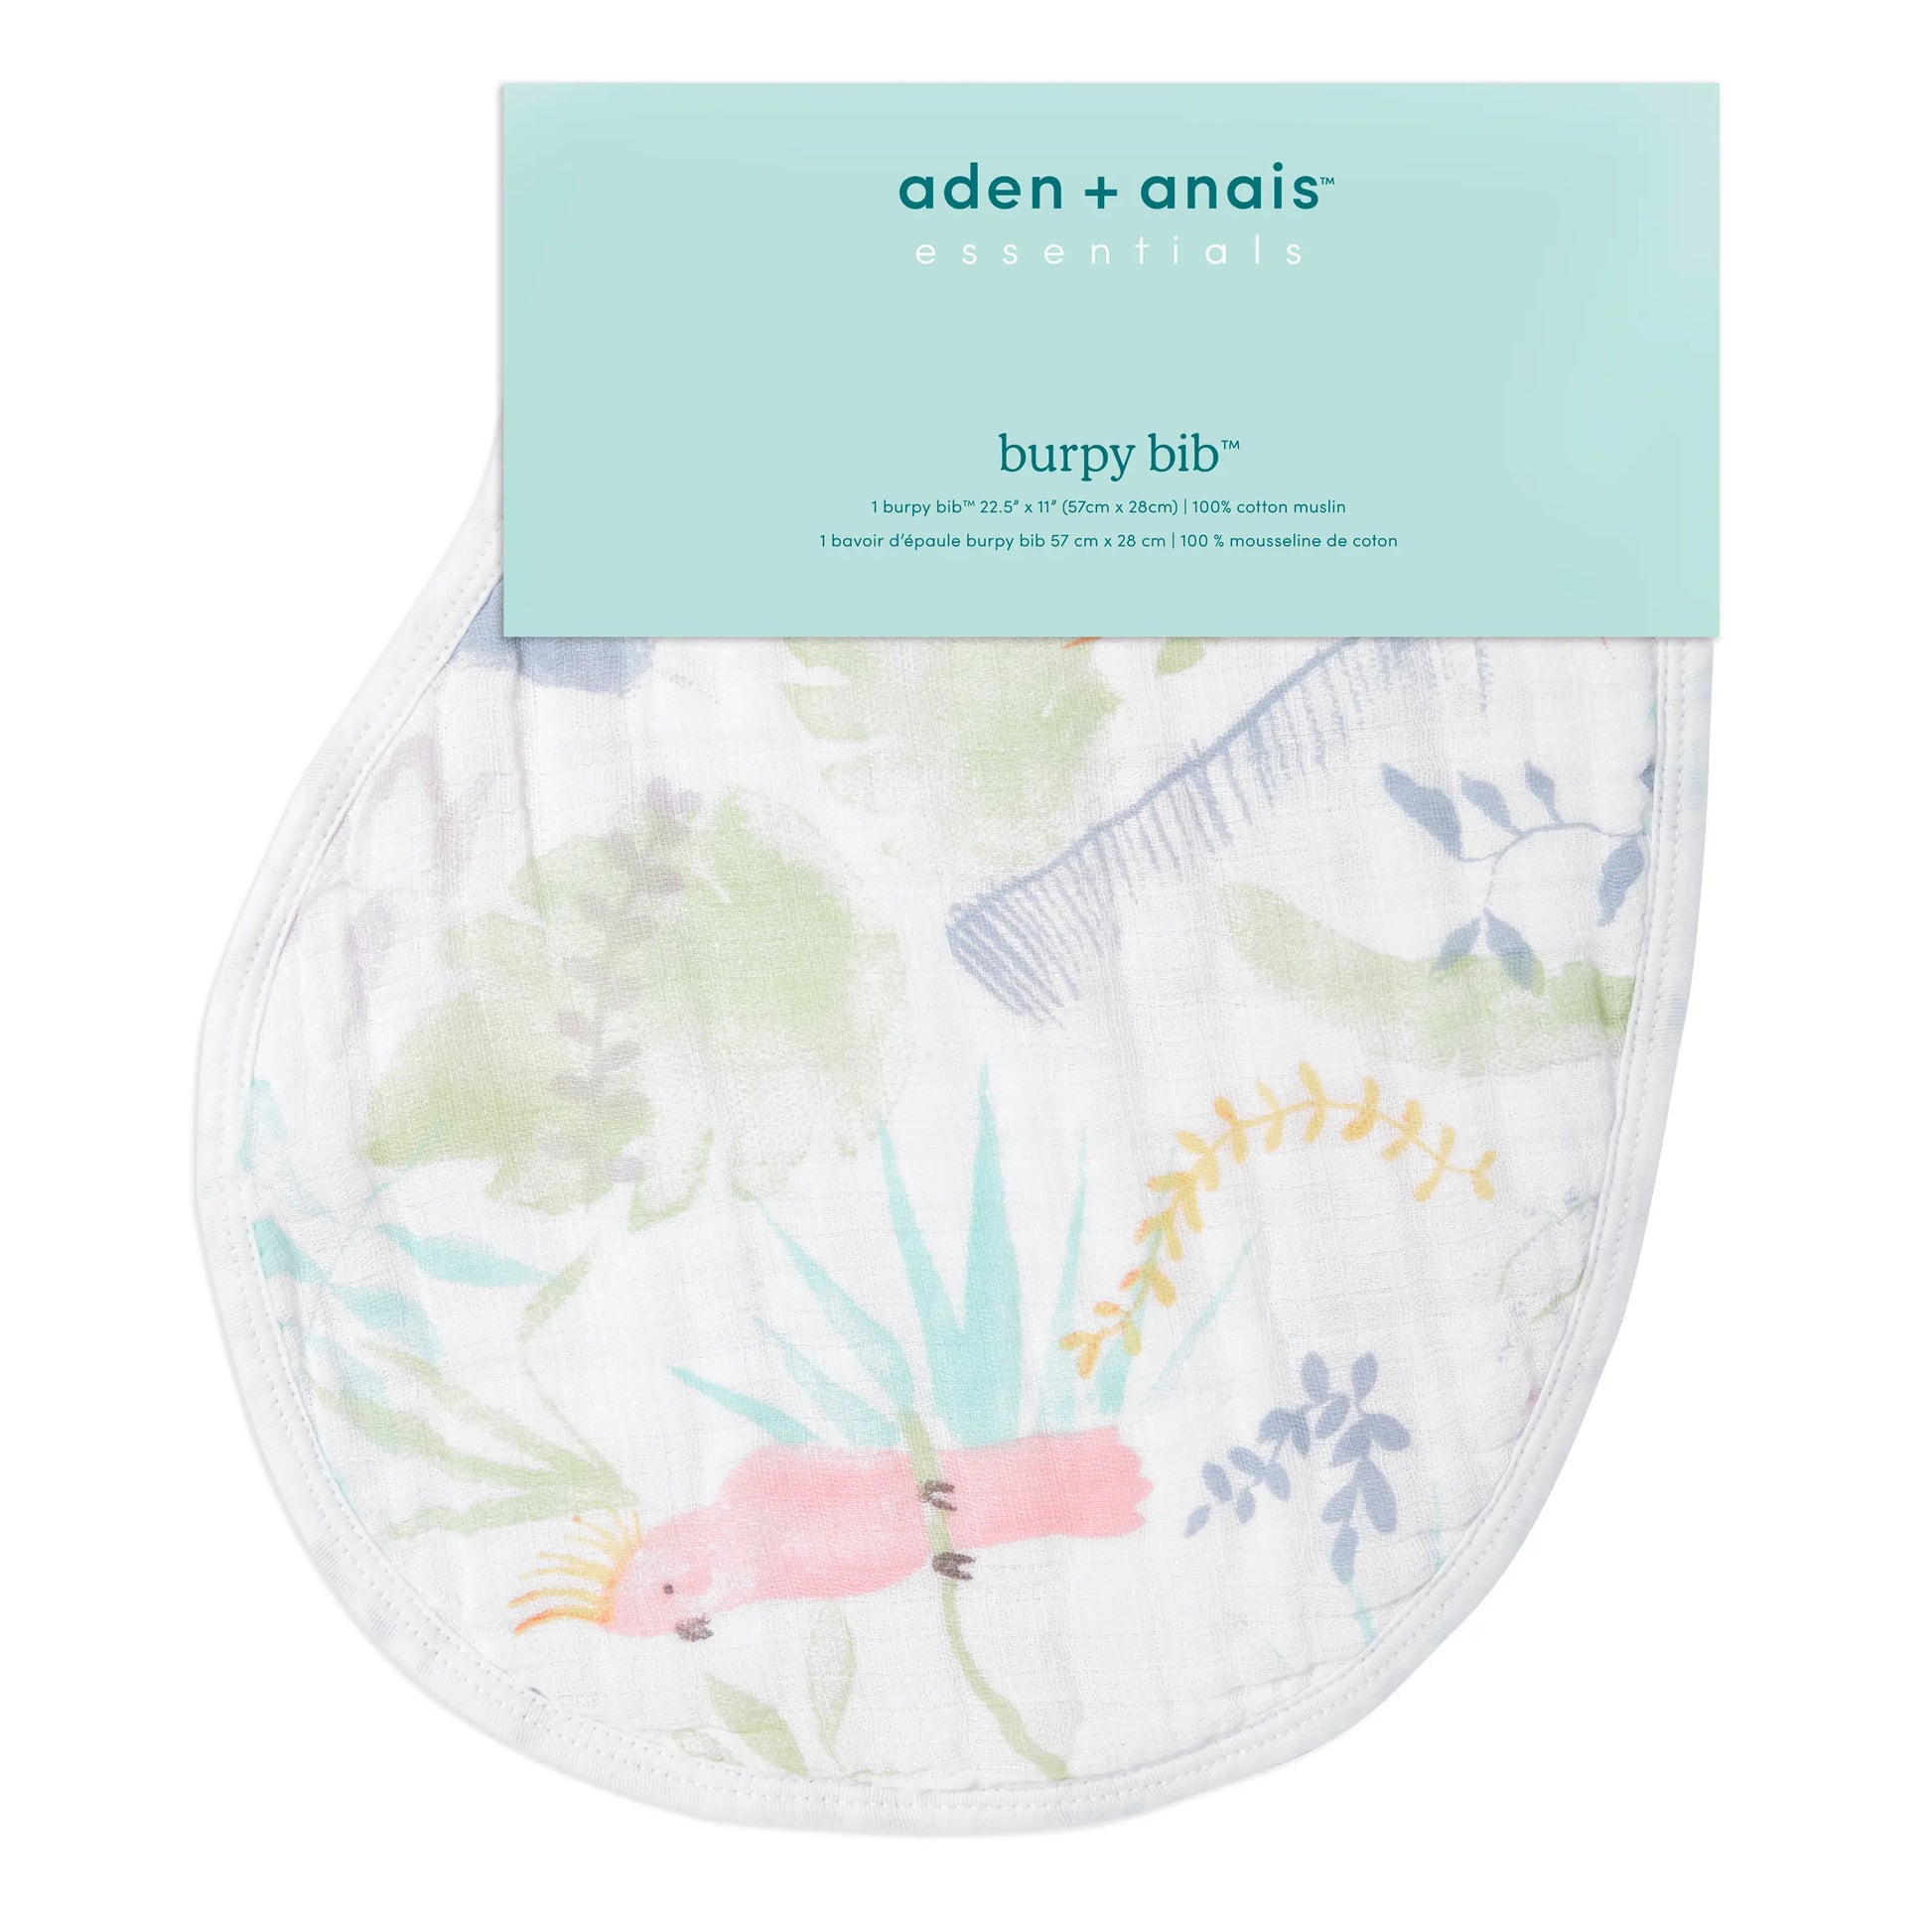 aden + anais essentials burby bib jungle print for baby